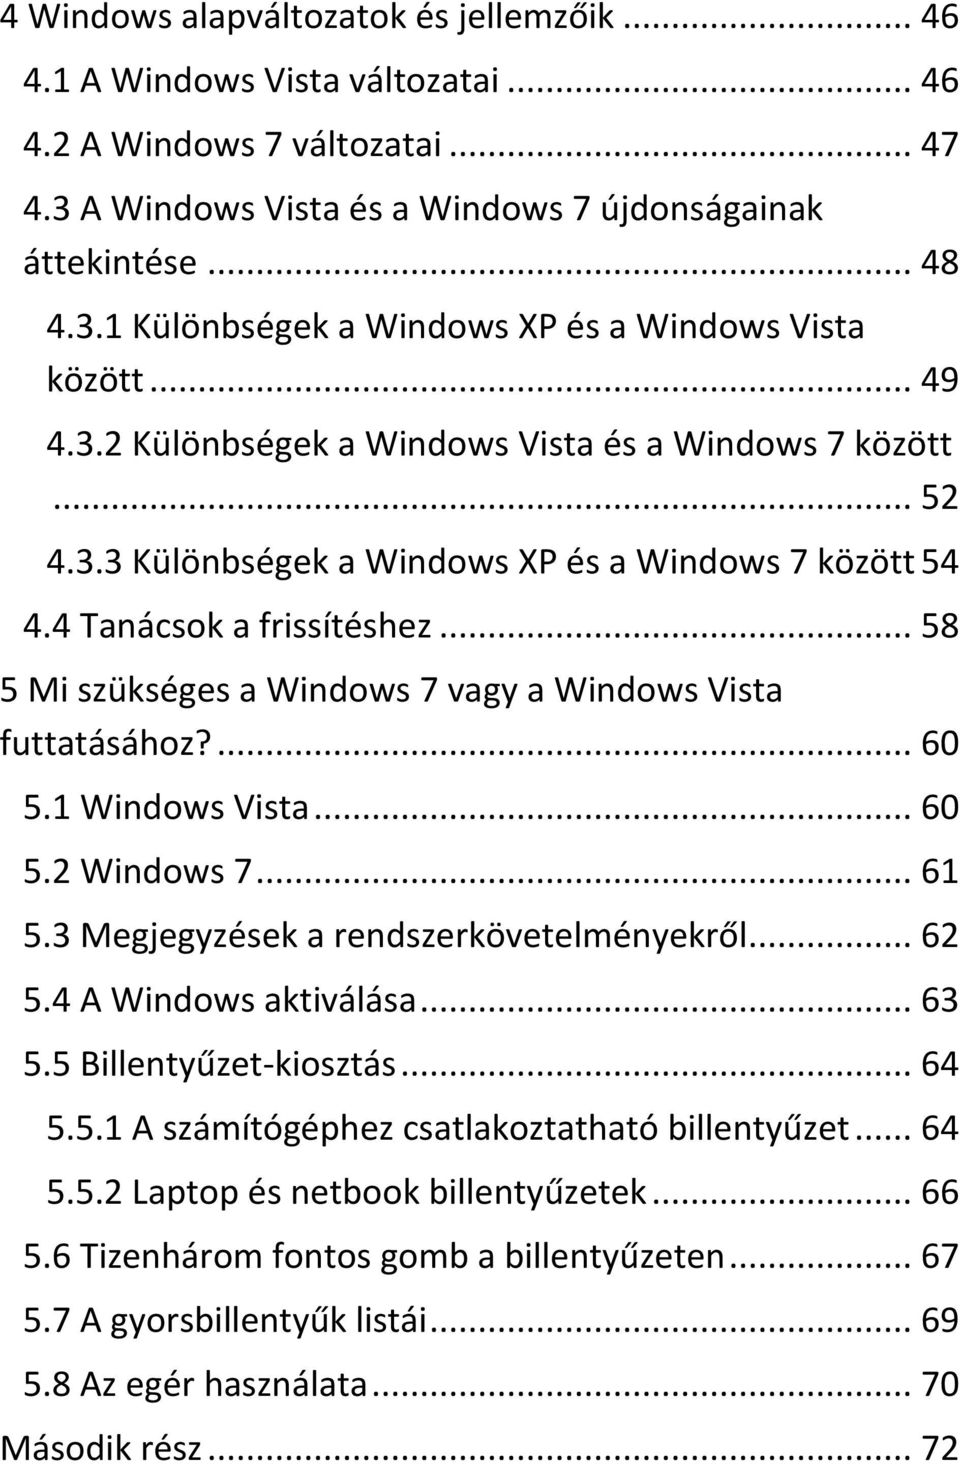 .. 58 5 Mi szükséges a Windows 7 vagy a Windows Vista futtatásához?... 60 5.1 Windows Vista... 60 5.2 Windows 7... 61 5.3 Megjegyzések a rendszerkövetelményekről... 62 5.4 A Windows aktiválása... 63 5.